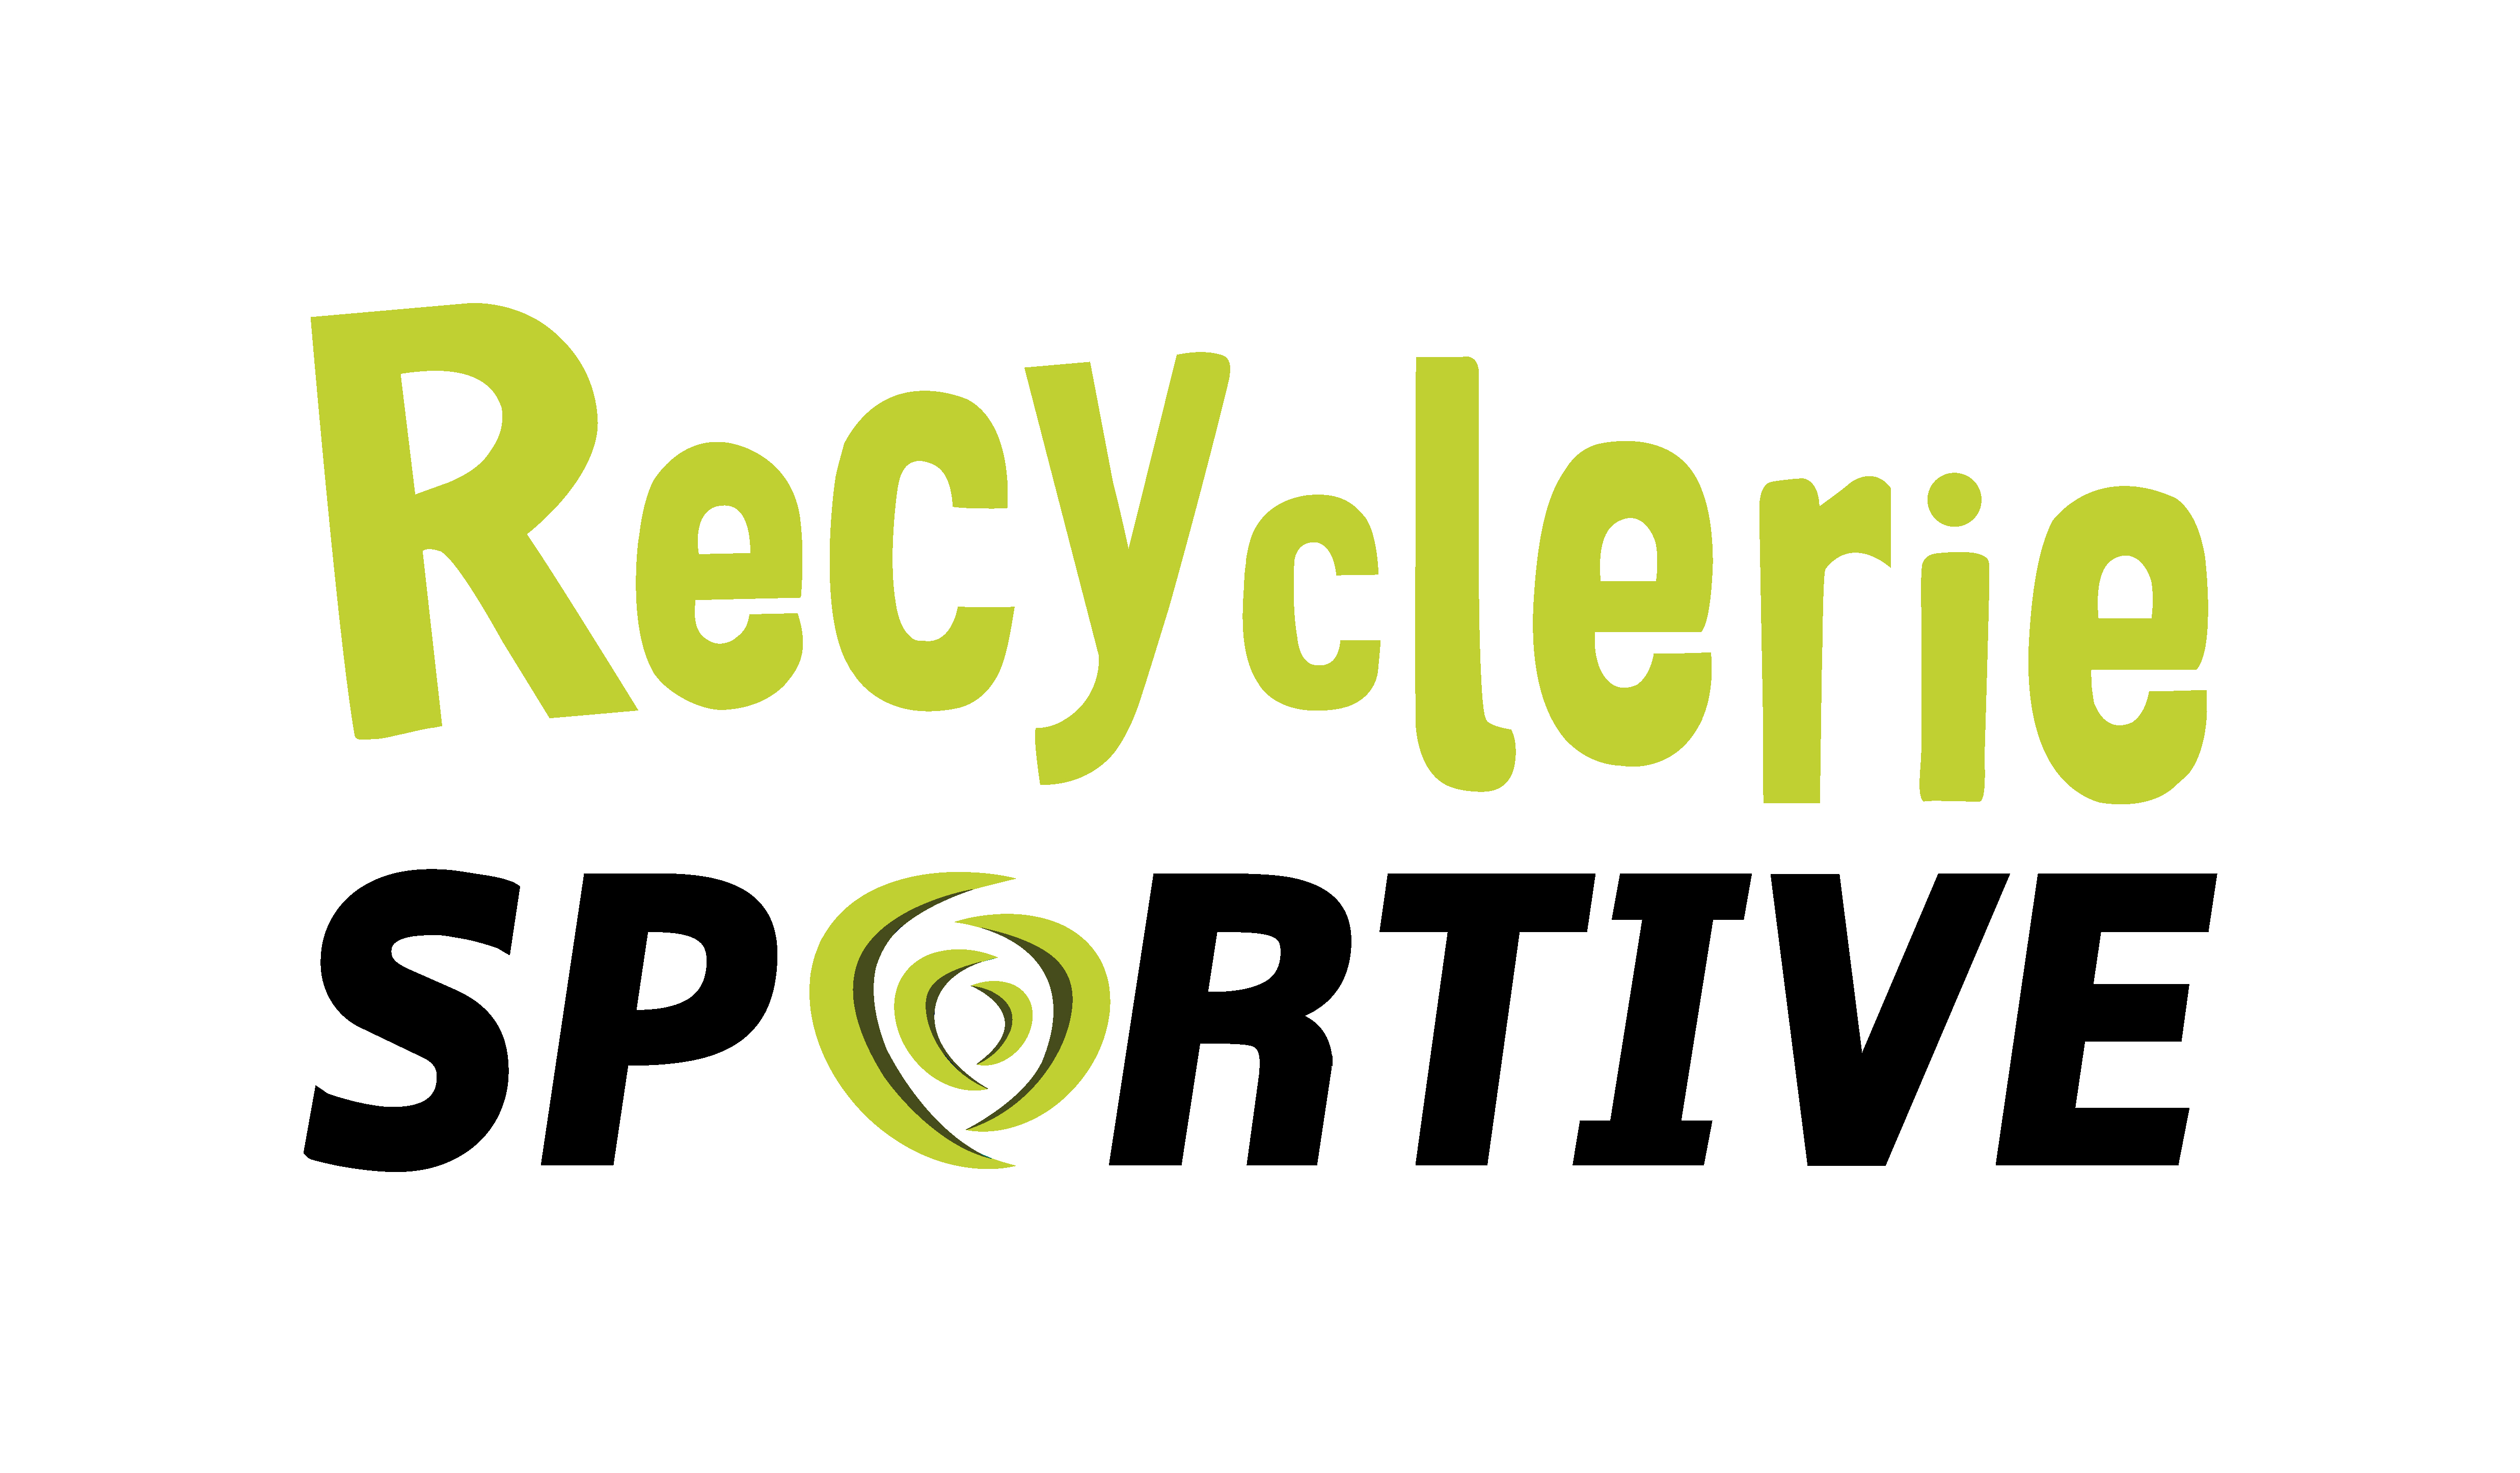 Recyclerie Sportive Grenoble